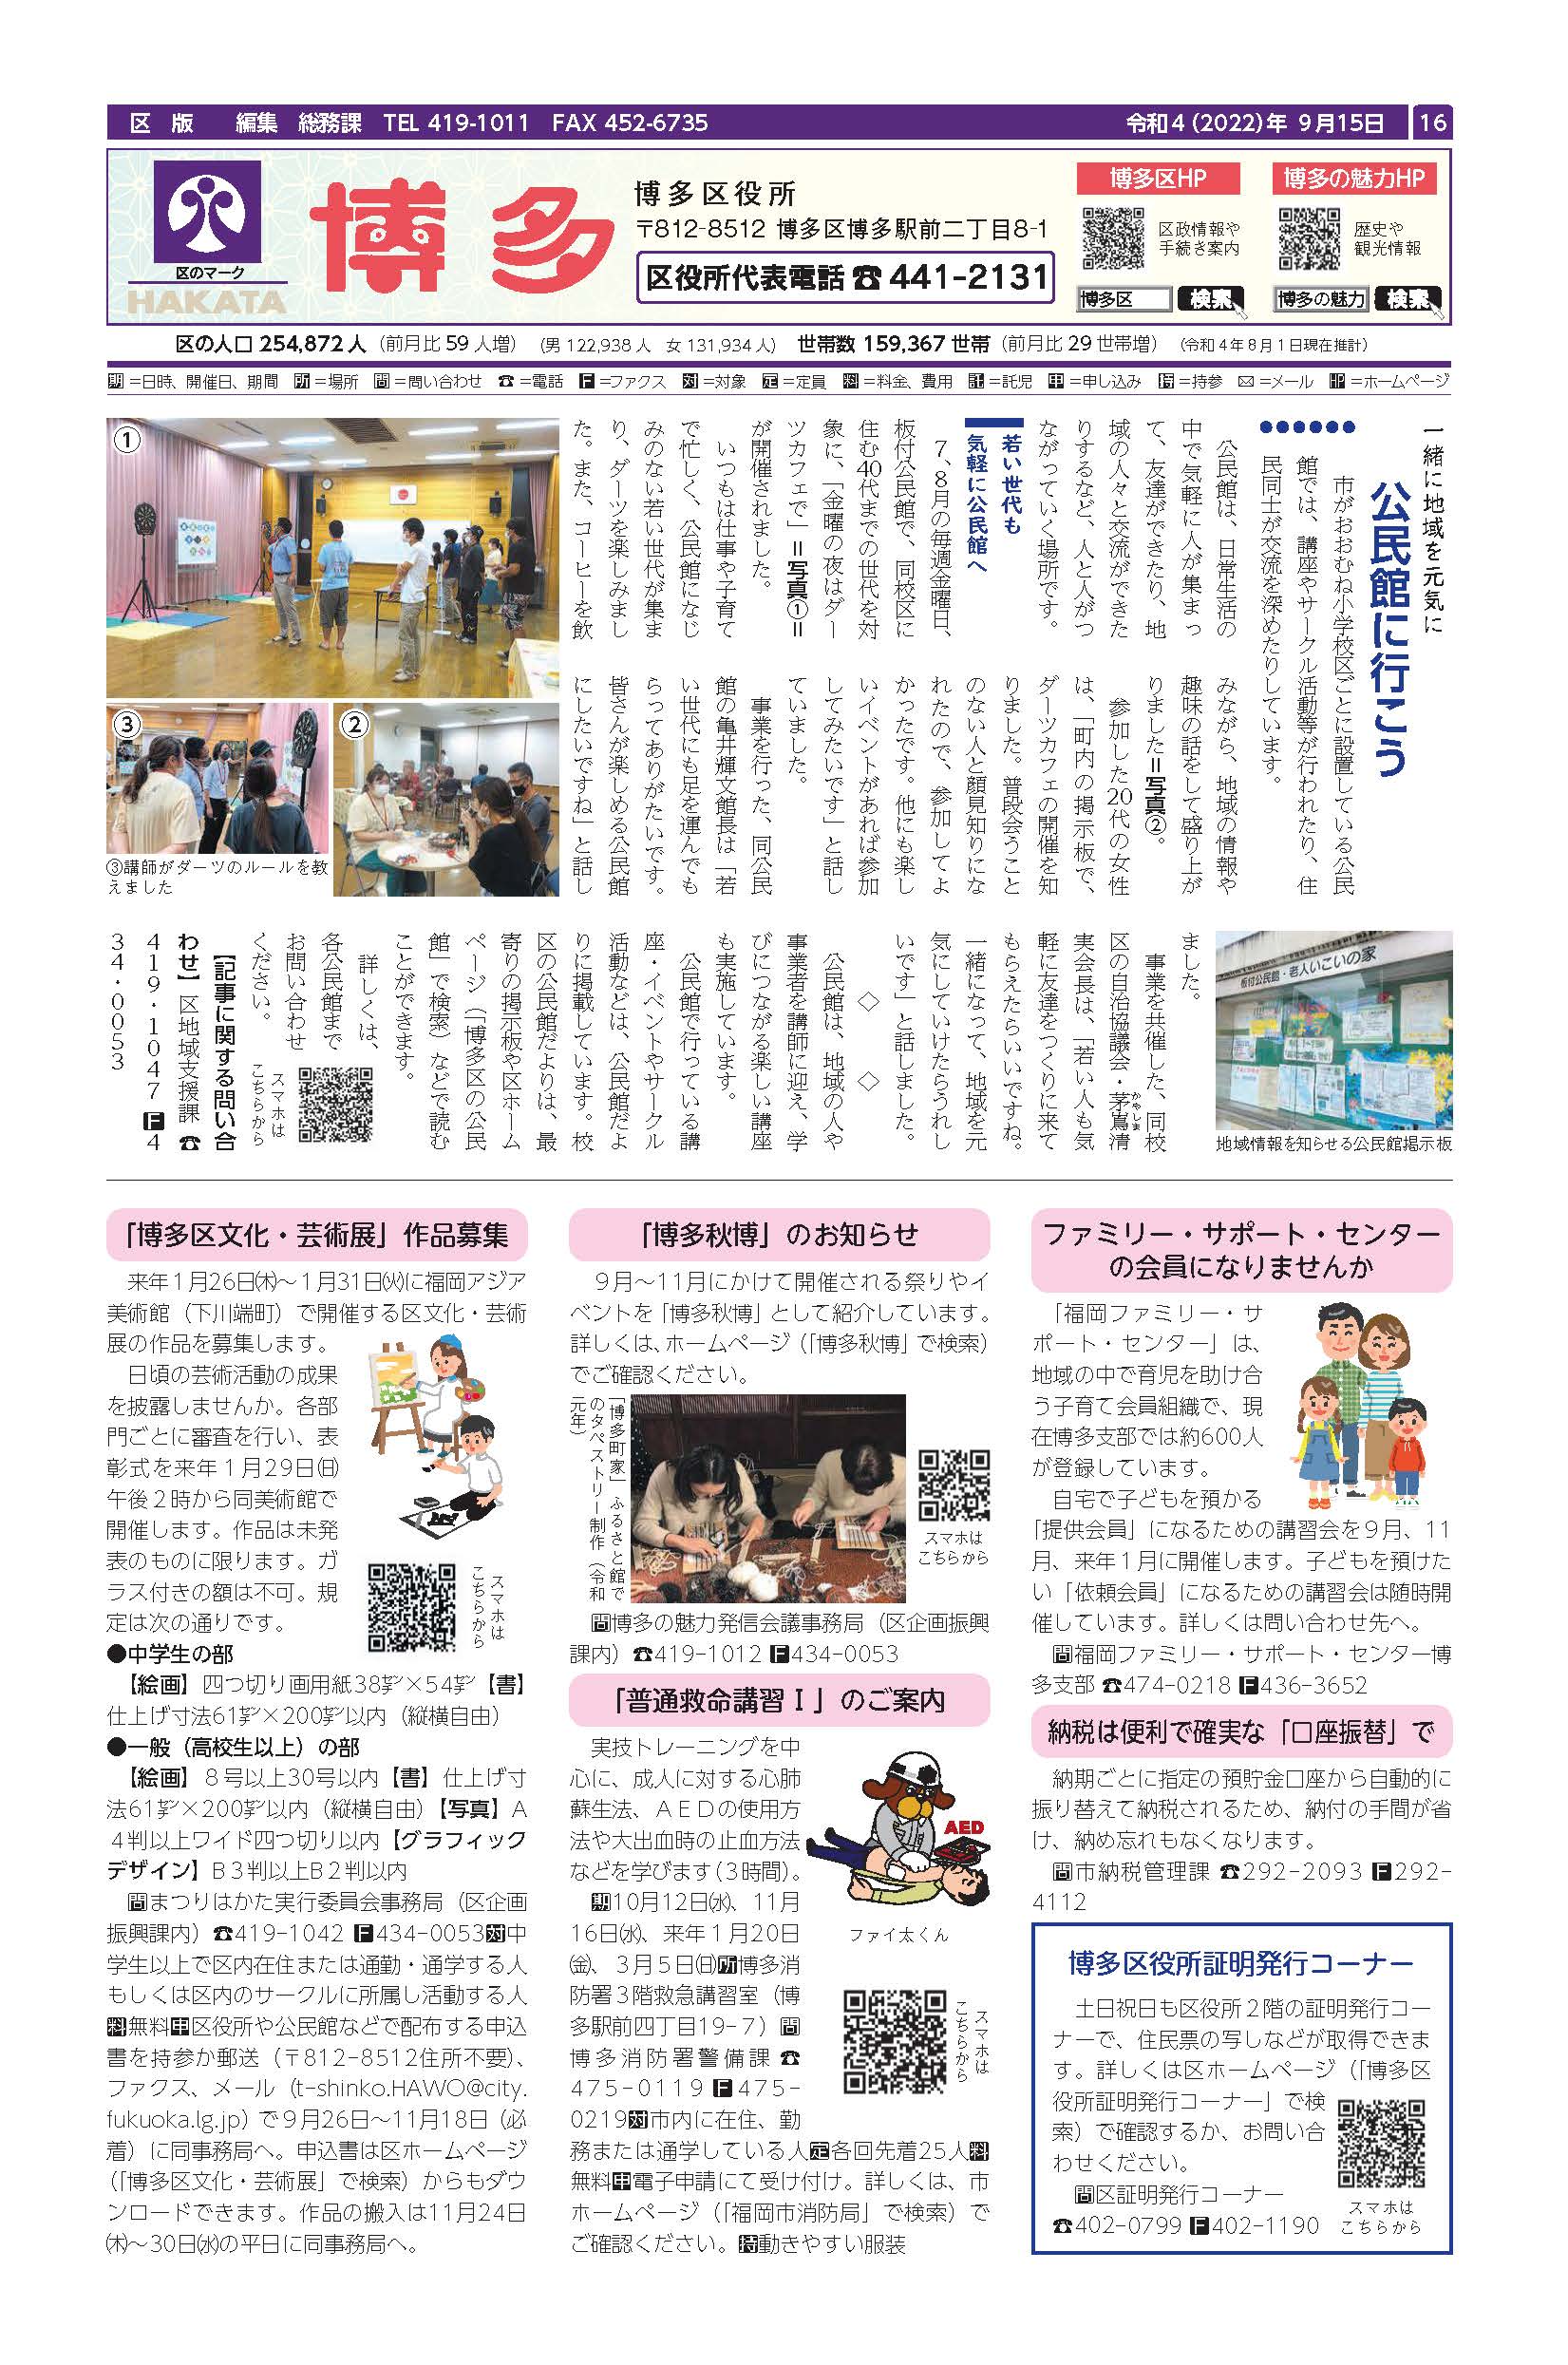 福岡市政だより2022年9月15日号の博多区版の紙面画像